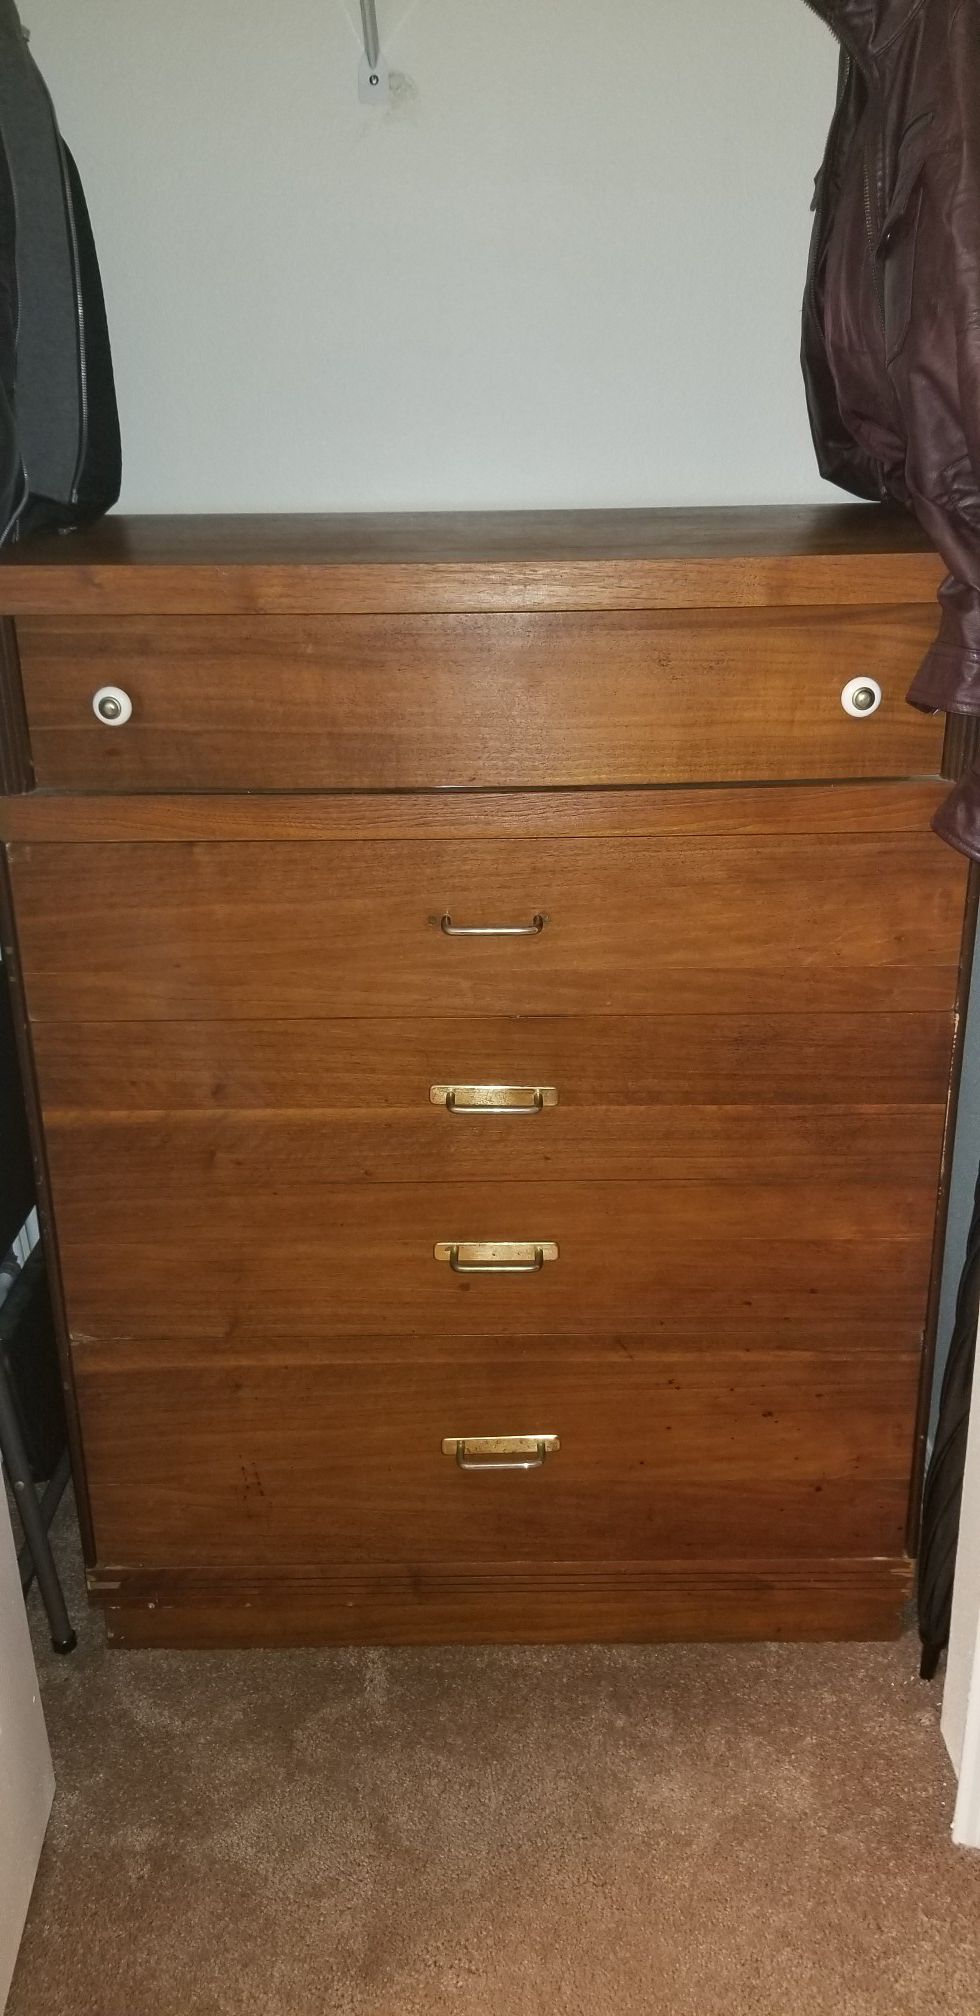 1930s wood dresser - must go today!